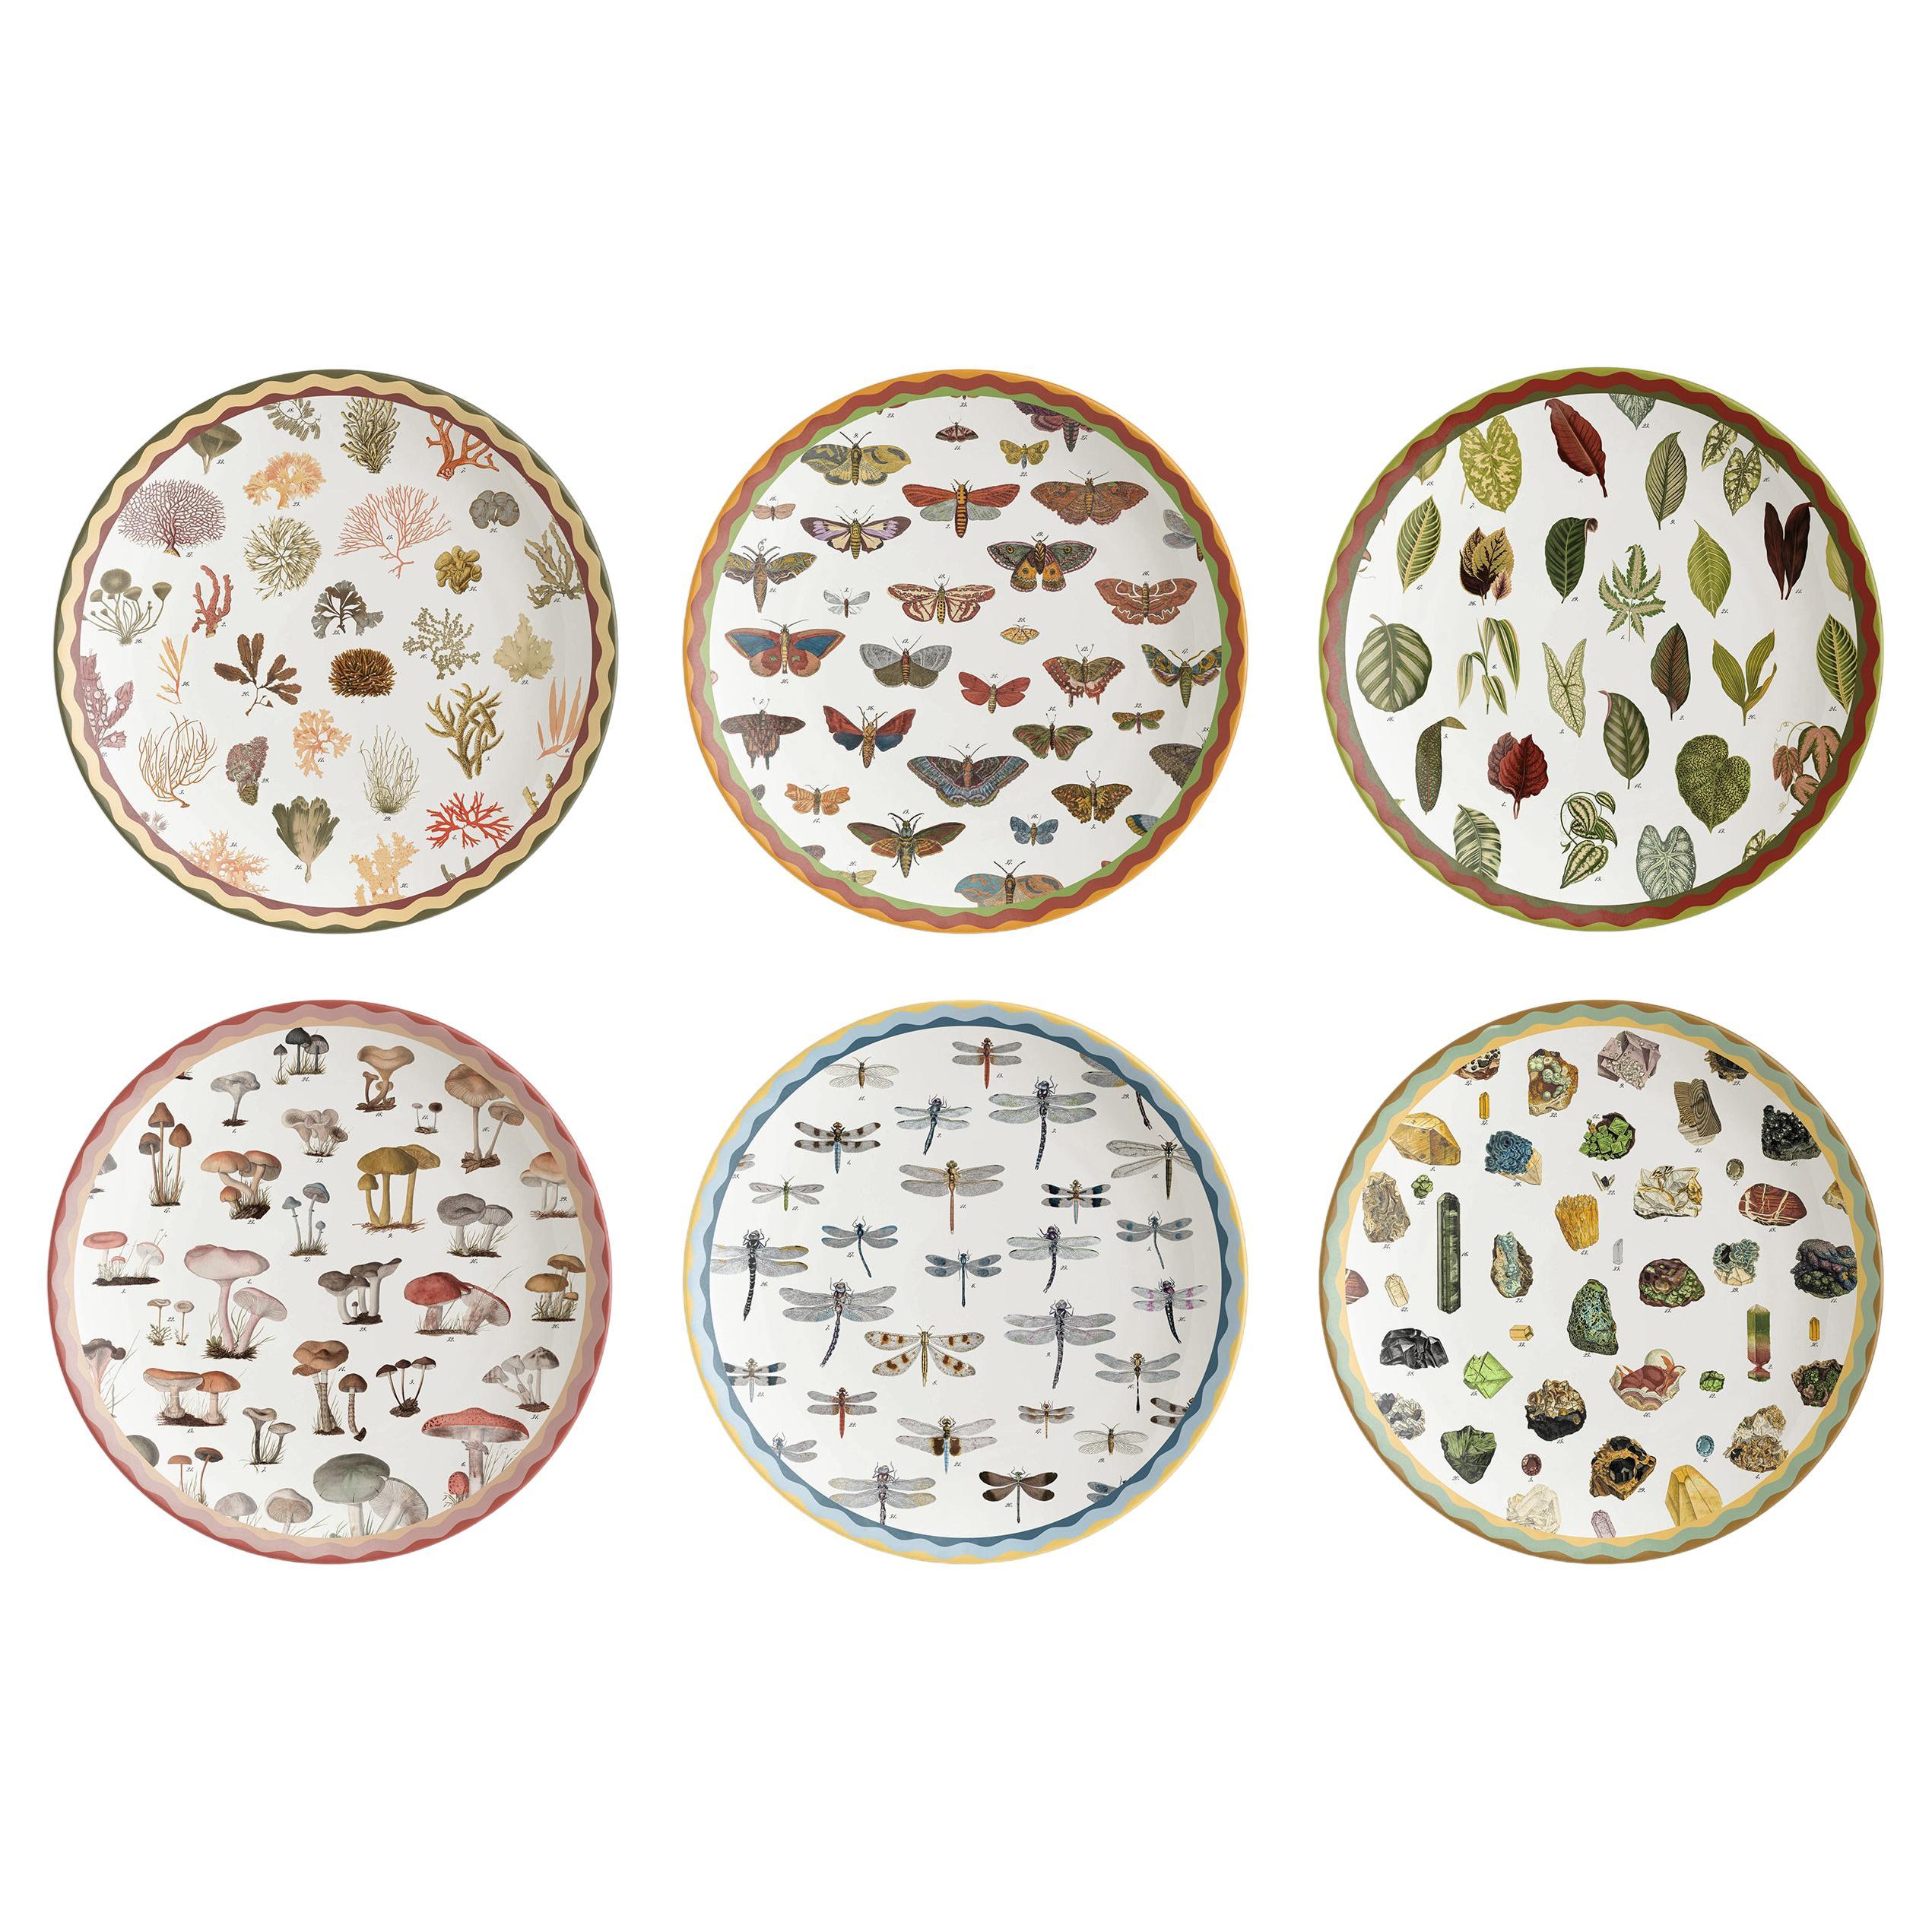 Cabinet de Curiosités, Six Contemporary Decorated Porcelain Platters For Sale